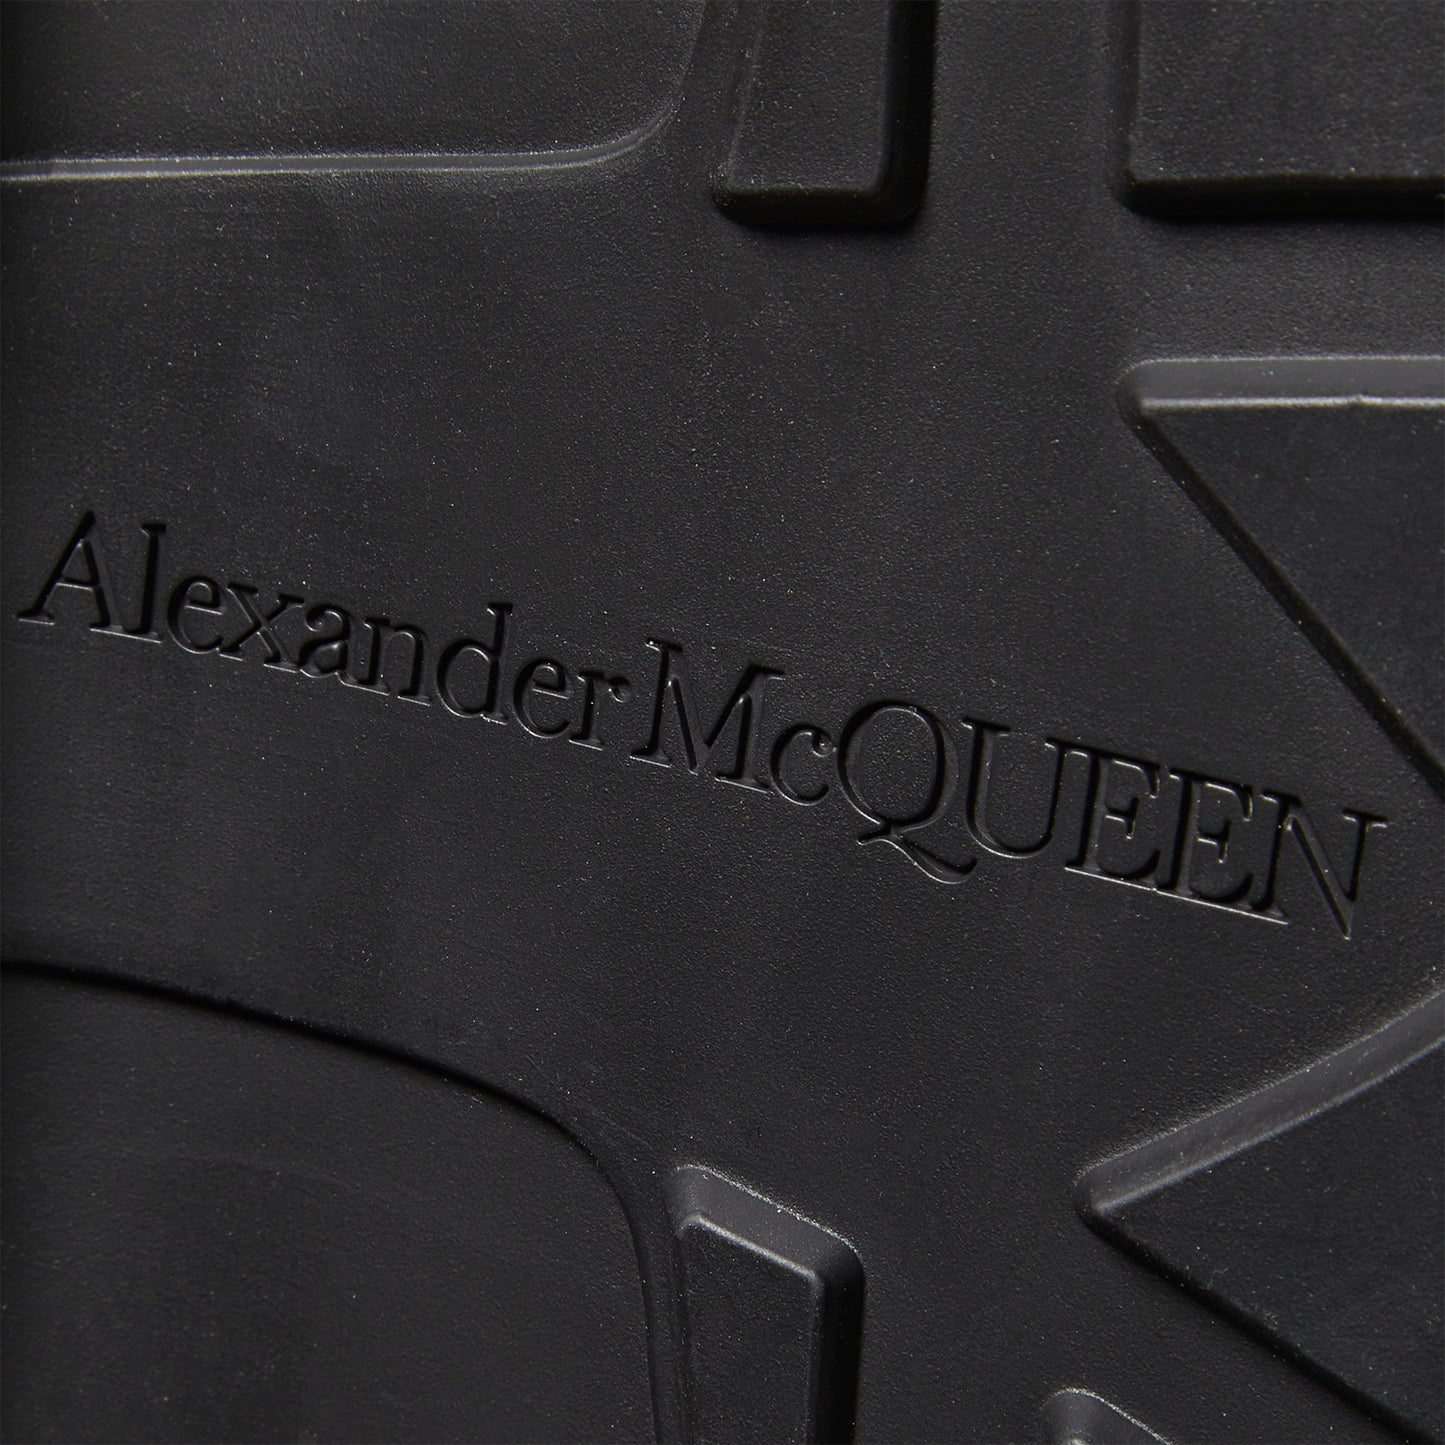 Alexander McQueen Tread Slick Zip Up Boot (Black)